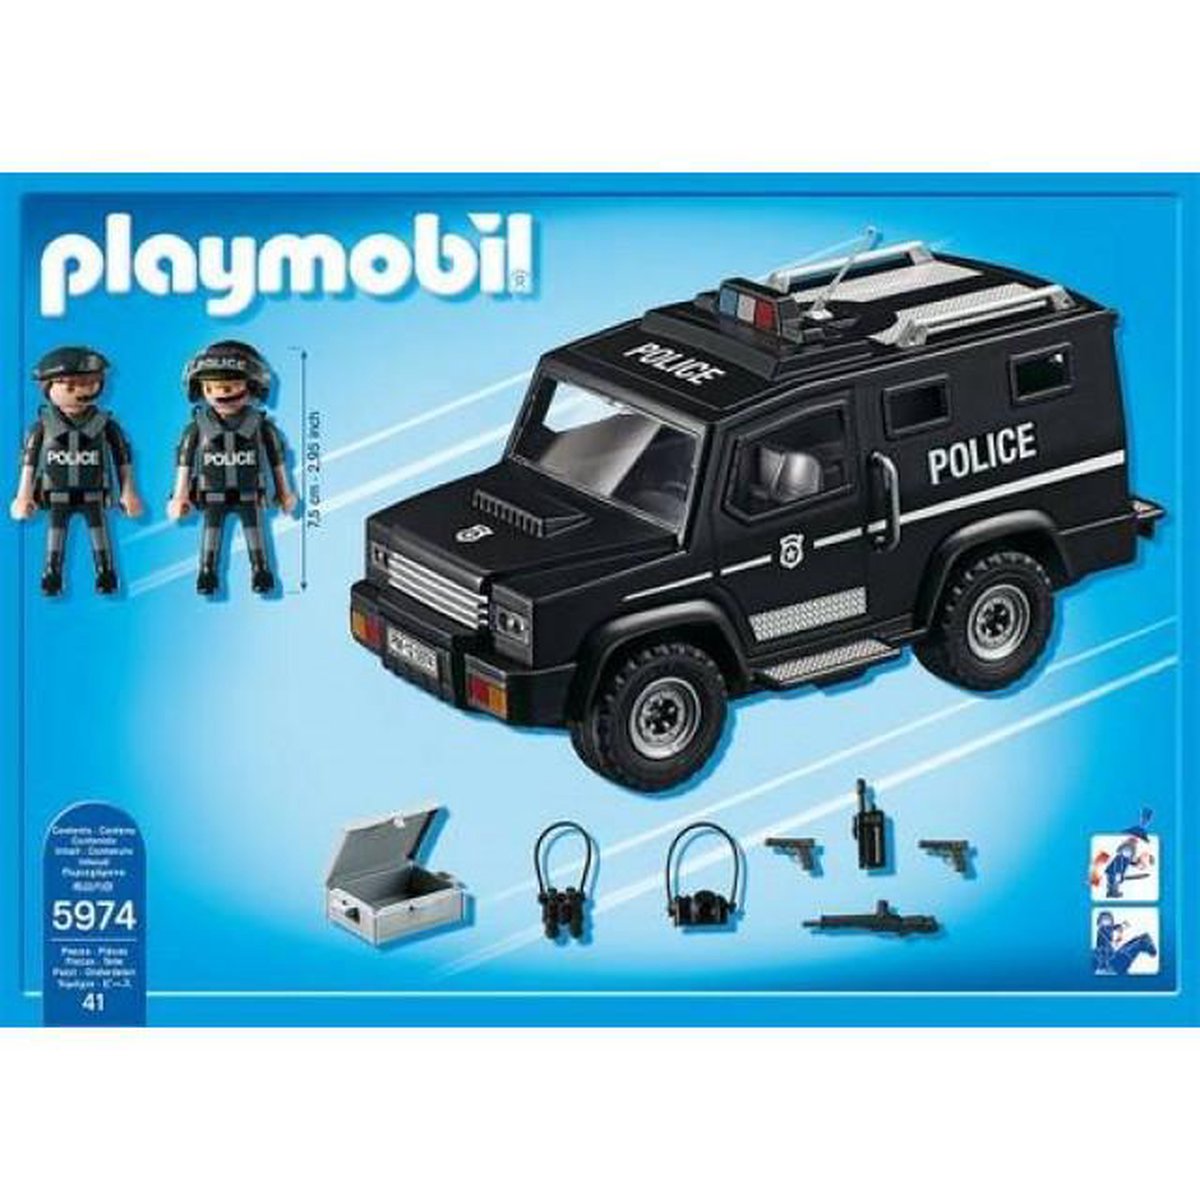 Geaccepteerd Bezwaar Vegetatie Playmobil Politie auto speciale eenheid | bol.com